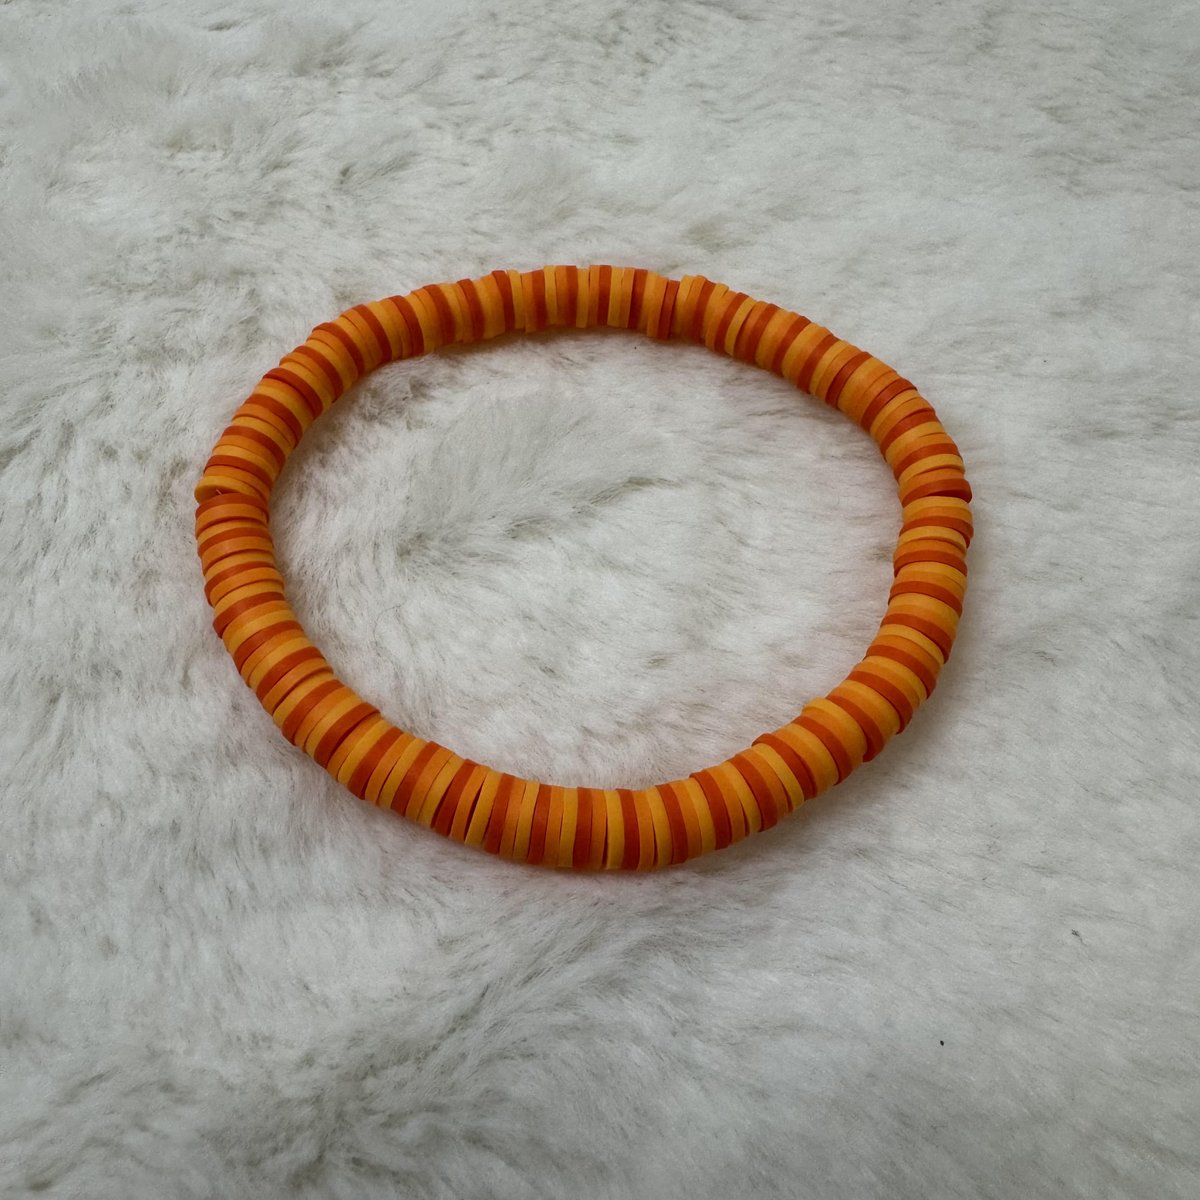 Orange Heishi Clay Bead Bracelet #1

aldesignsbyashley.etsy.com

#etsyshop #etsyseller #etsyhandmade #etsy #handmade #handmadejewelry #handmadeearrings #earrings #handmadeearringsforsale #earringstyle #etsygifts #etsysellersofinstagram #jewelry #jewelrydesign